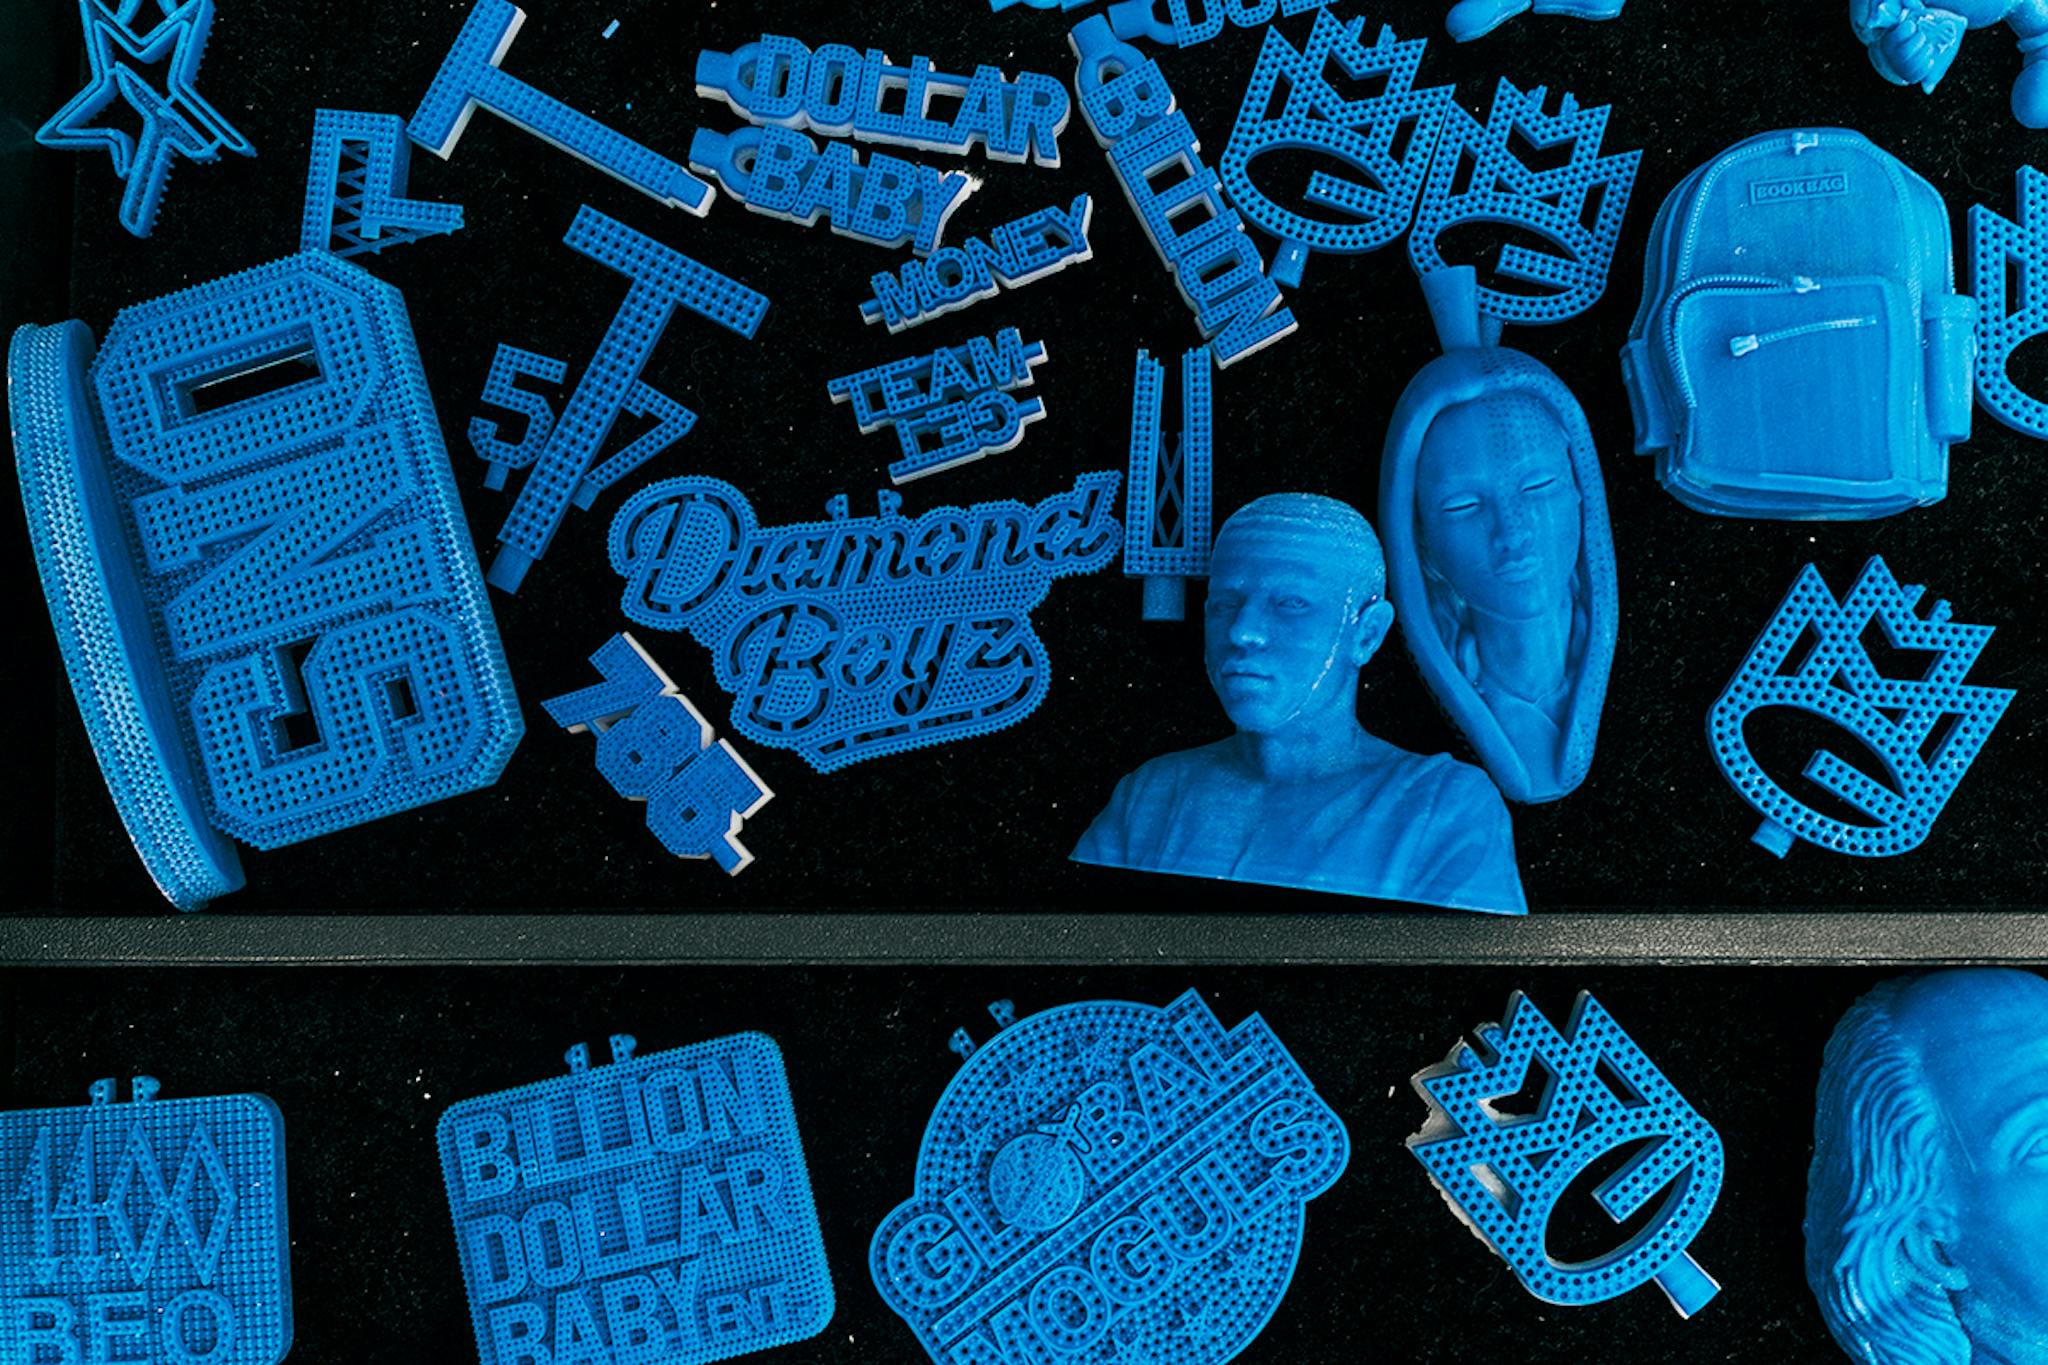 3D printed mock-up Johnny Dang designs.